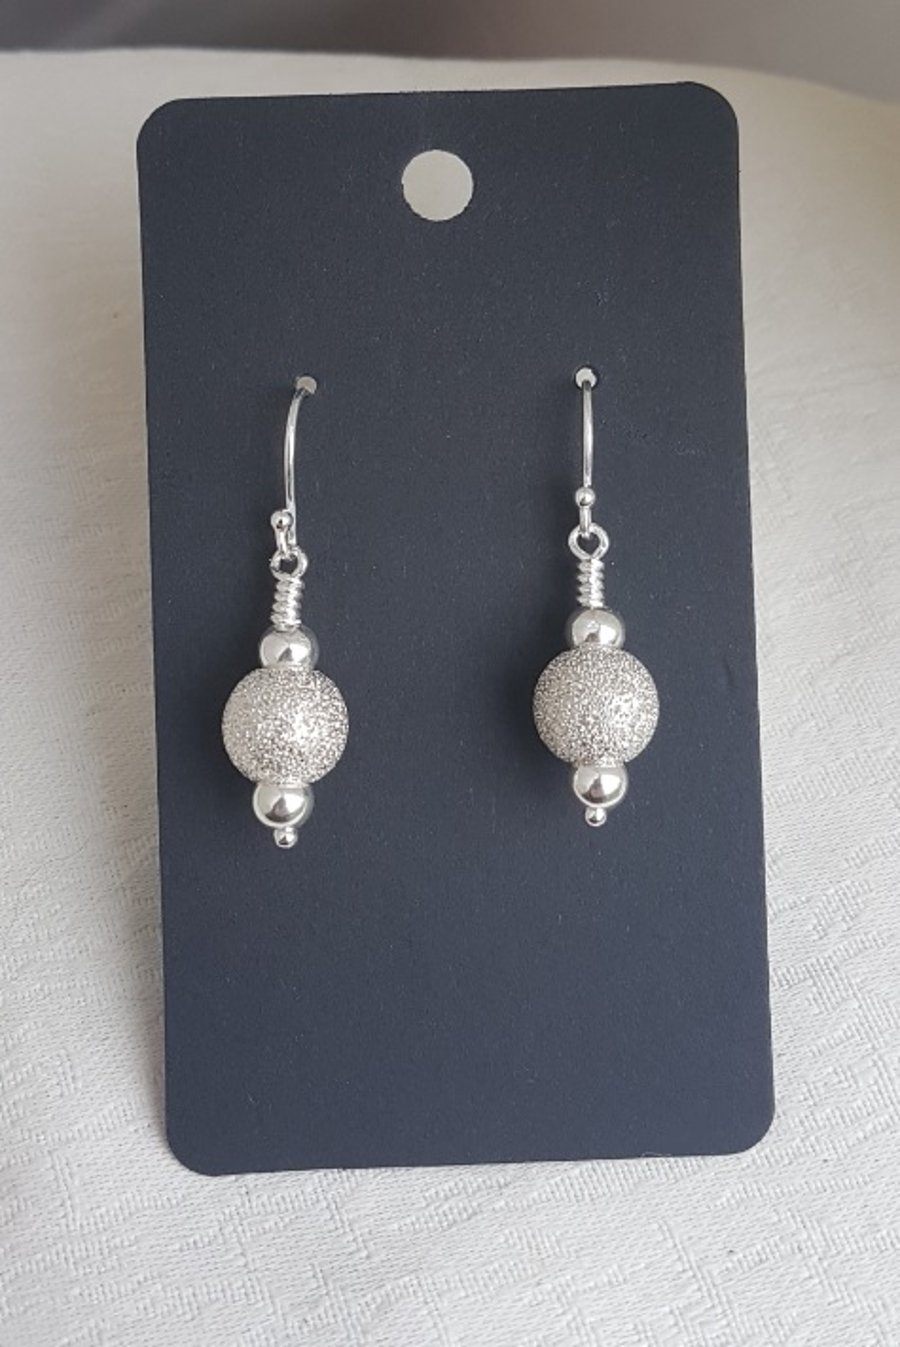 Gorgeous Stardust Earrings - Sterling Silver